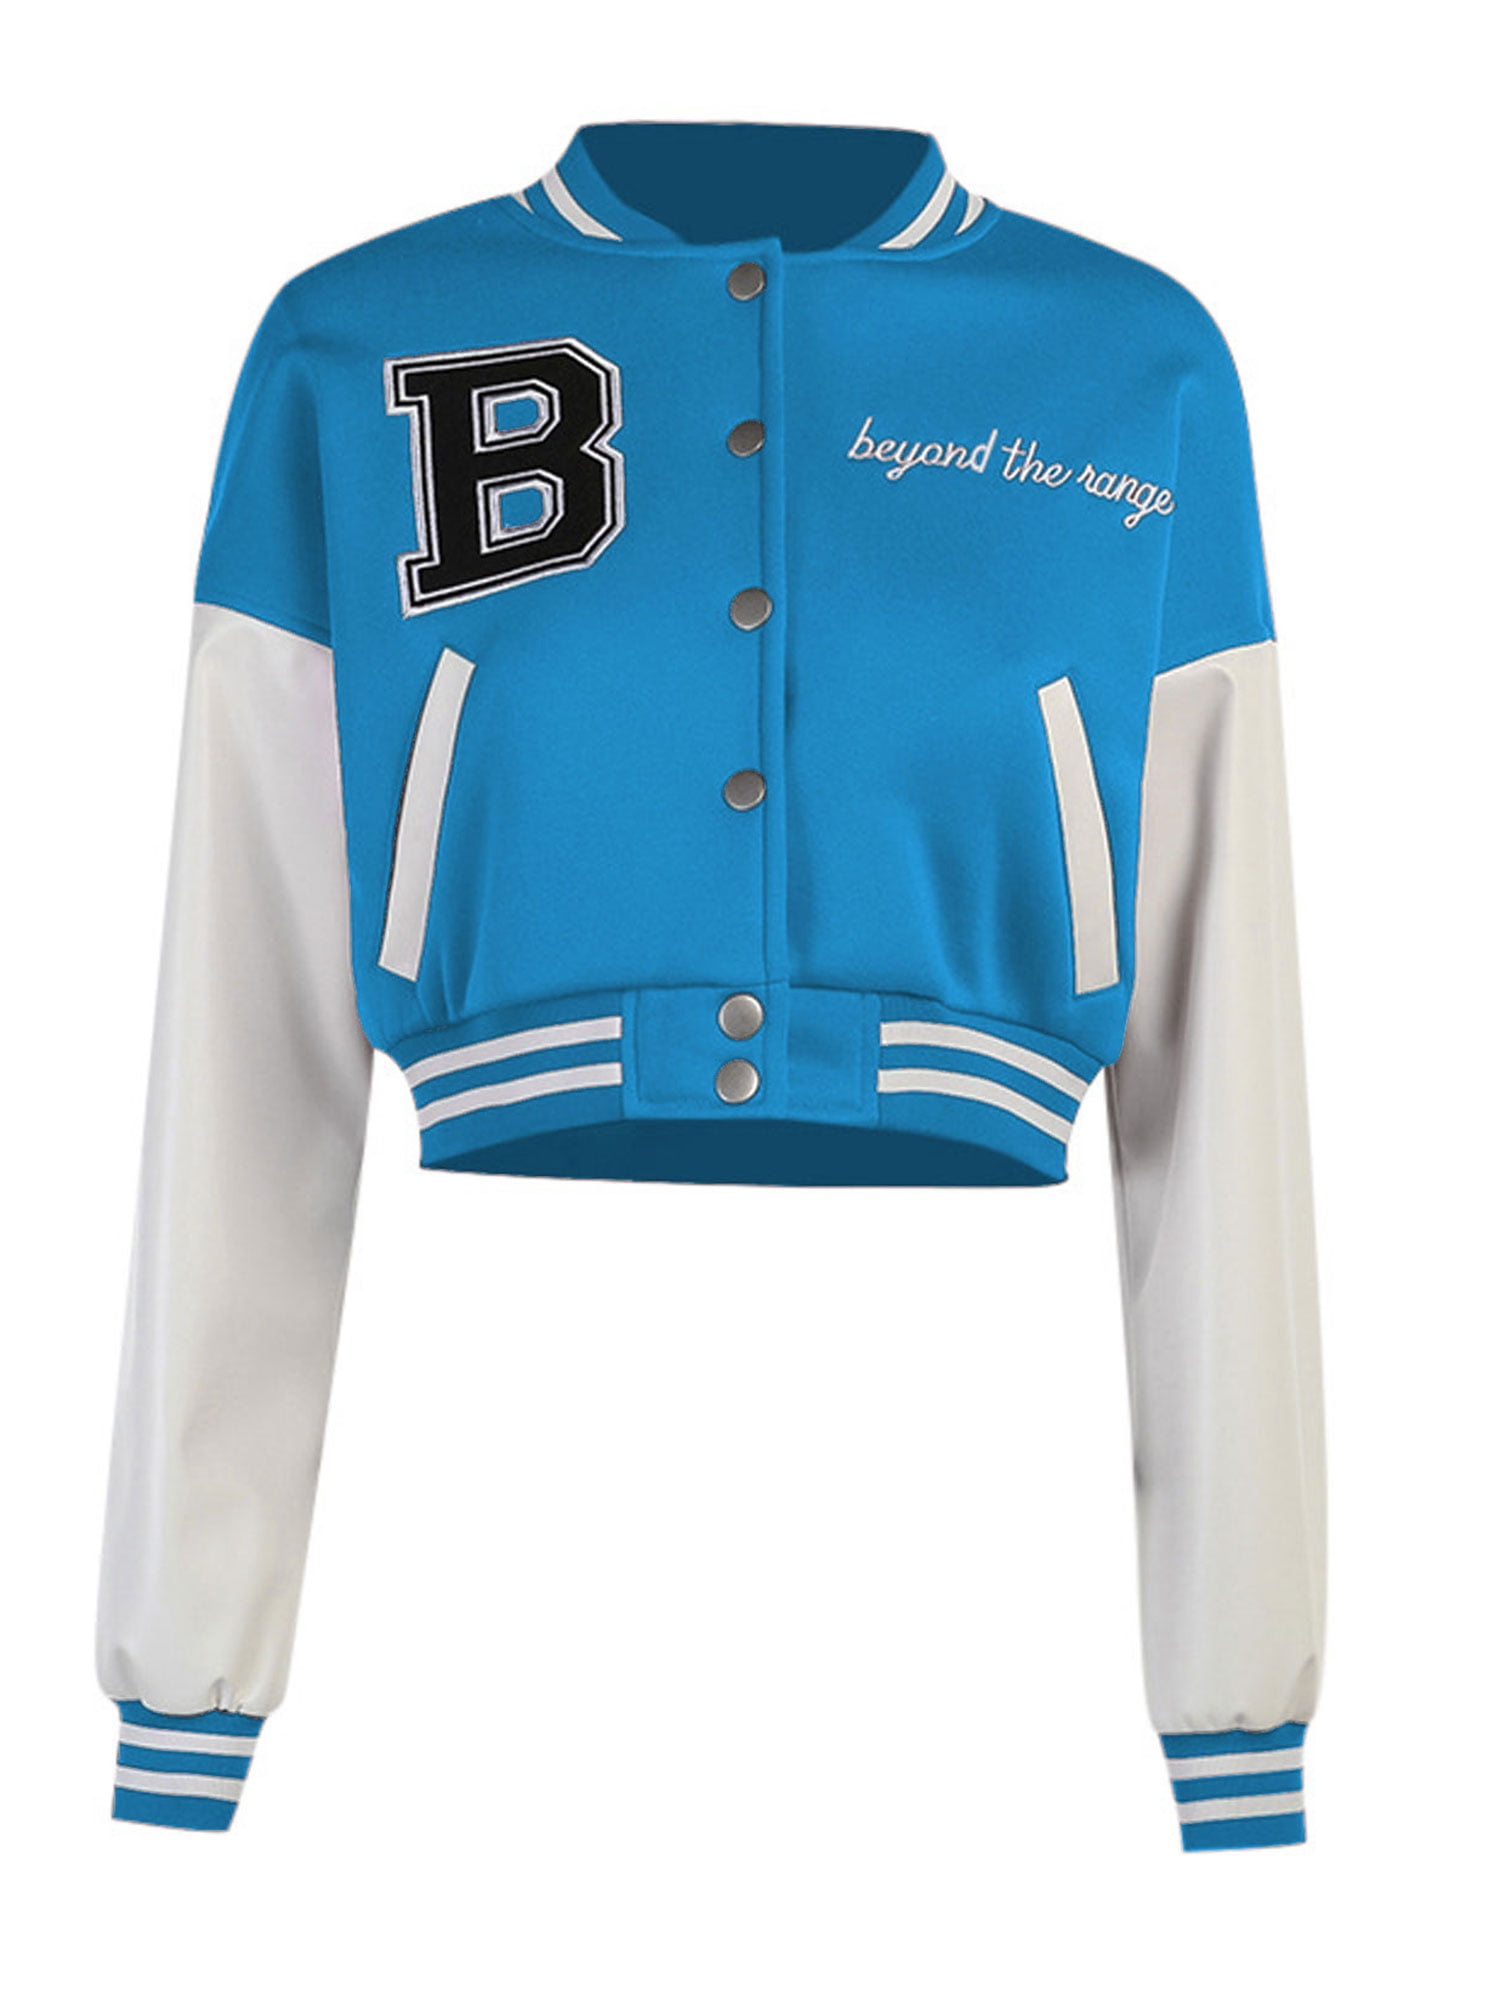 baseball jacket blue and white